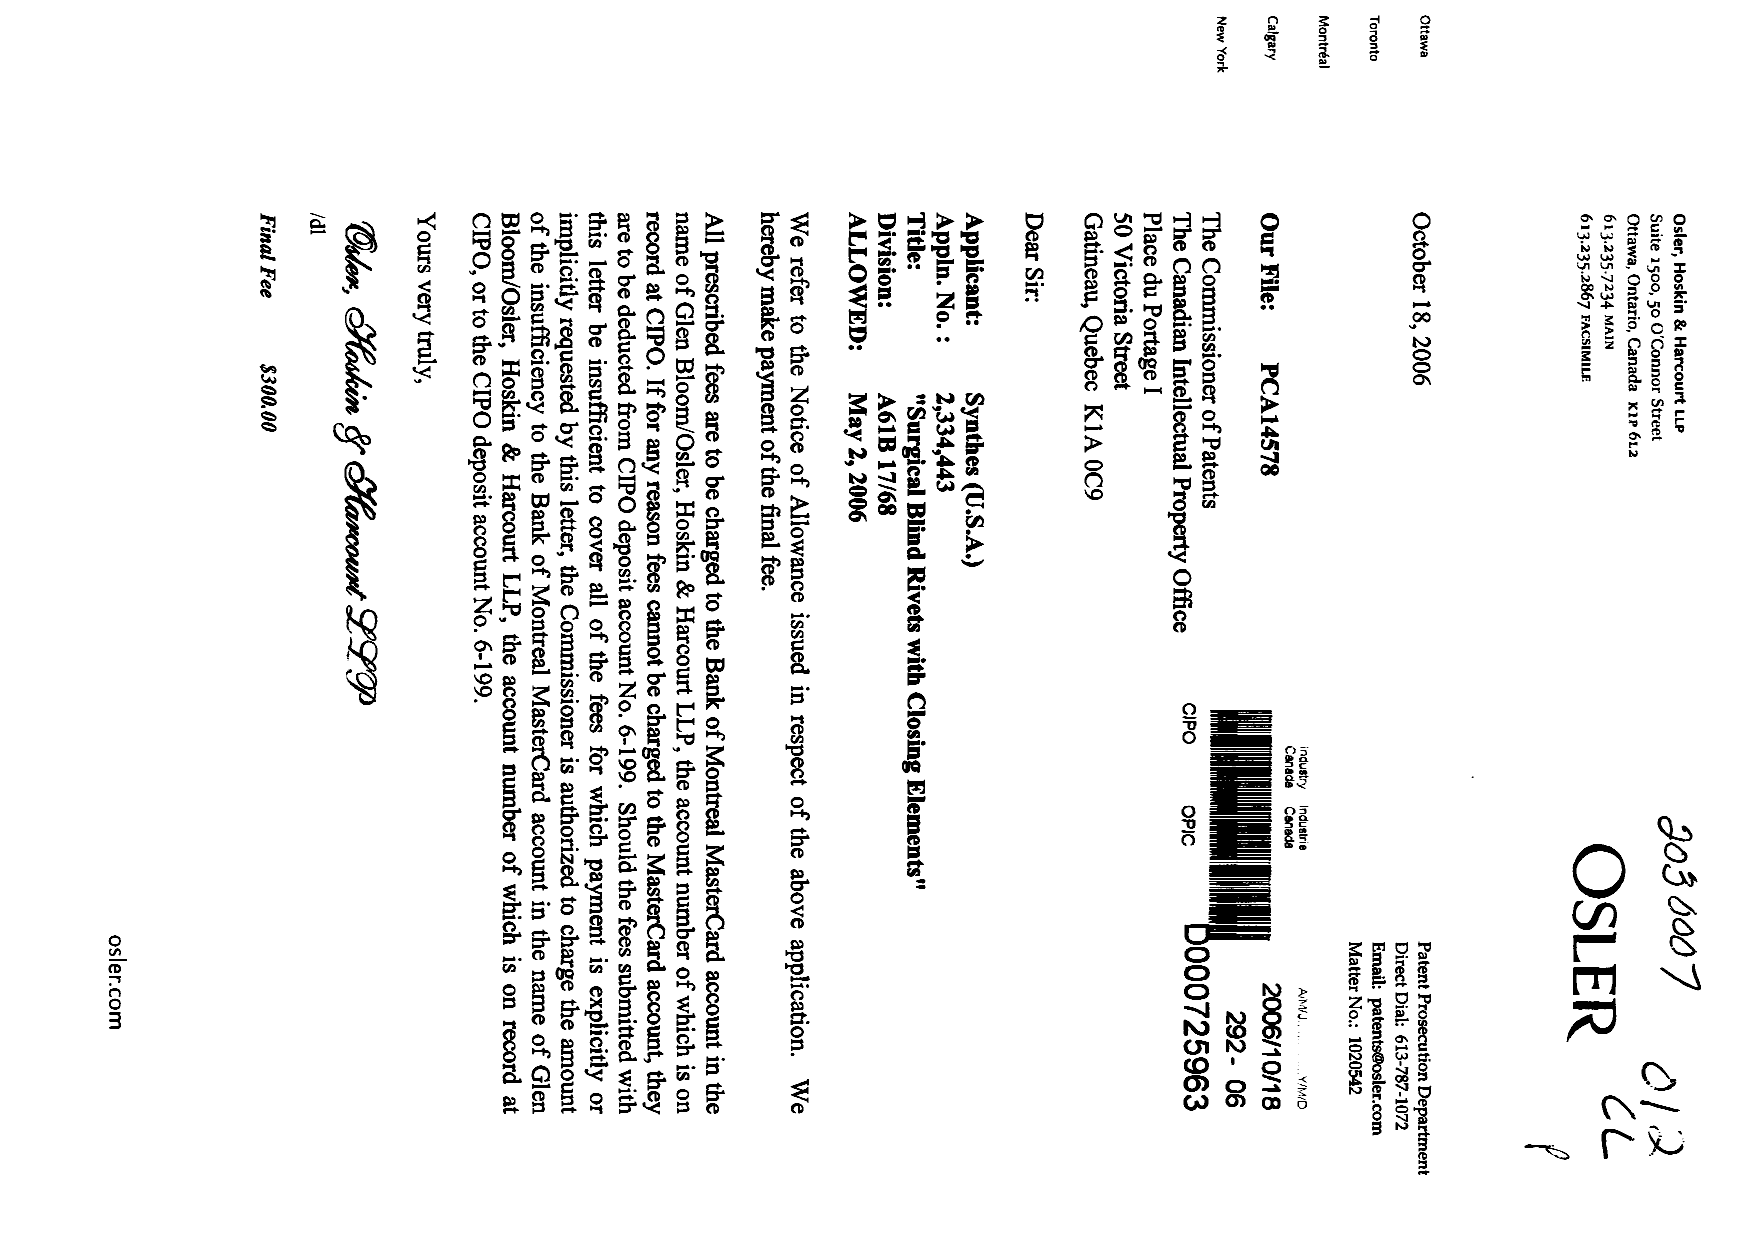 Document de brevet canadien 2334443. Correspondance 20051218. Image 1 de 1